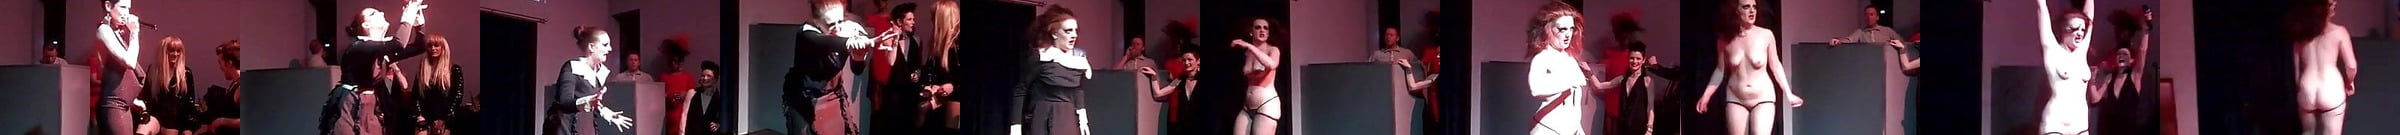 Burlesque Porn Videos Dancing In Lingerie Xhamster